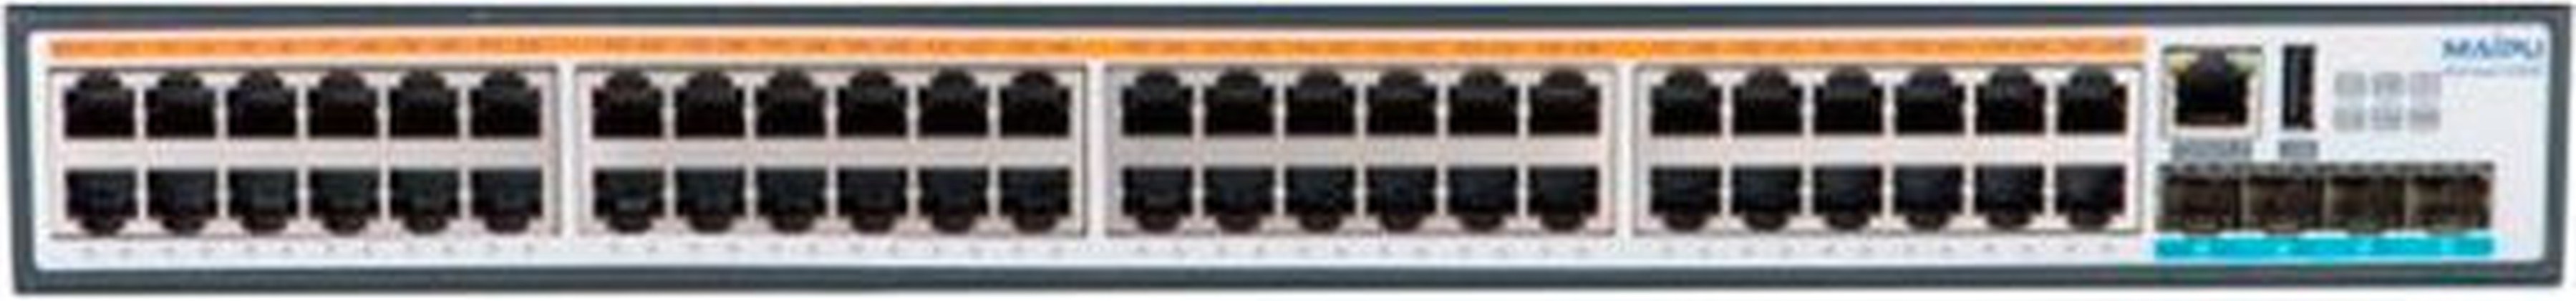 Коммутатор Maipu S3230-54TXP-AC